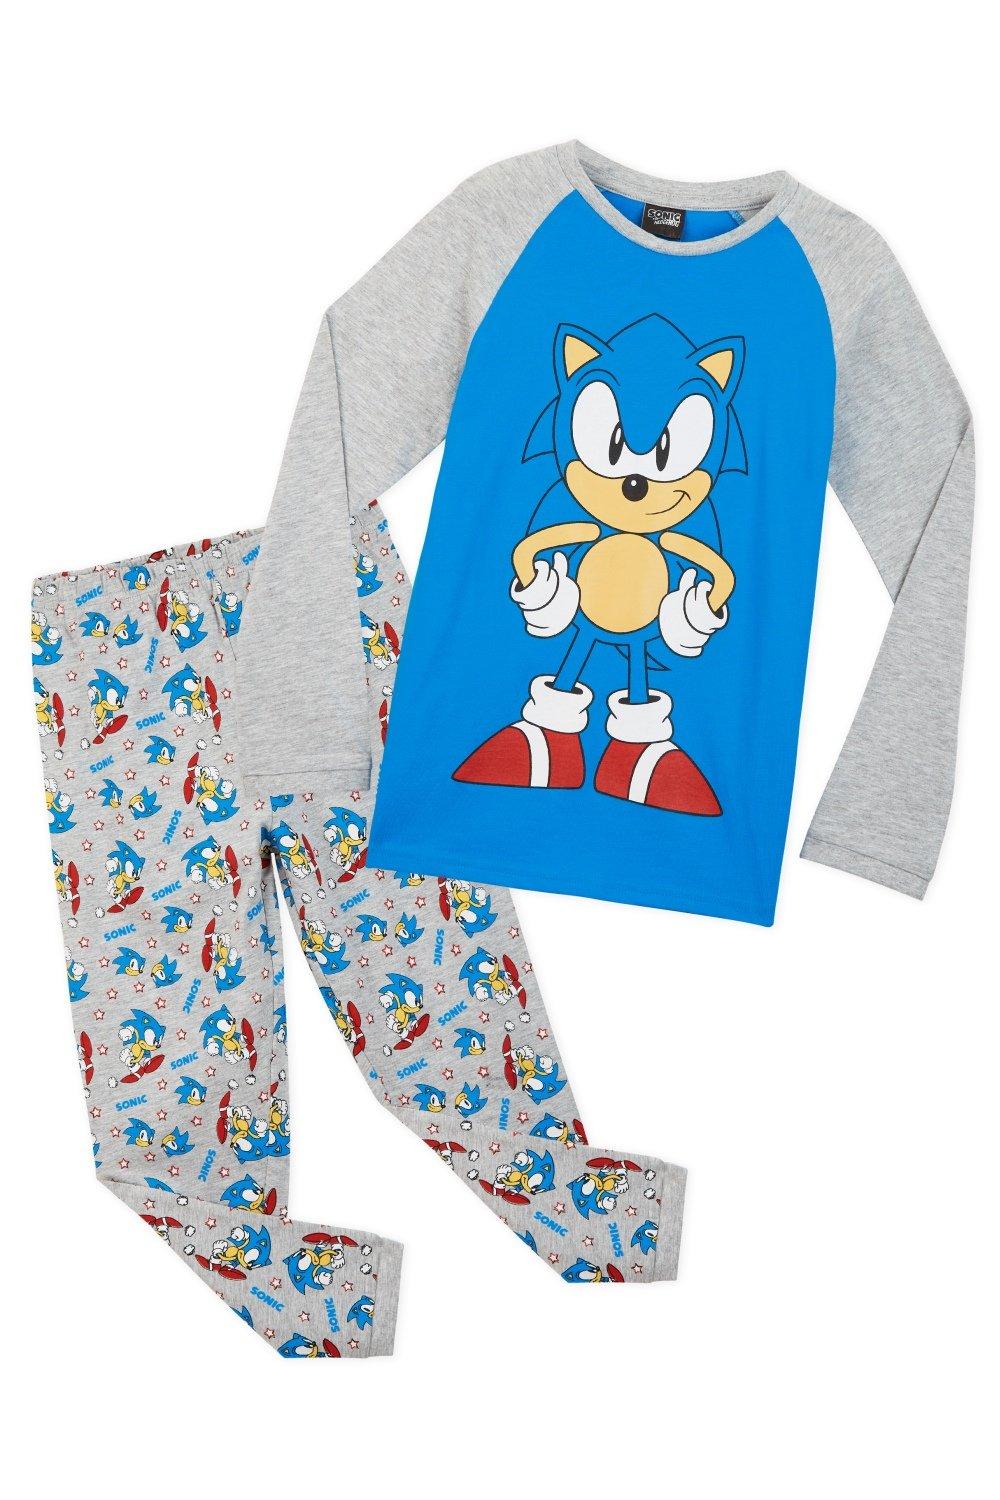 Пижамный комплект Sonic the Hedgehog, мультиколор мягкая игрушка тейлз майлз прауэр из фильма и игры соник sonic 28 30 см